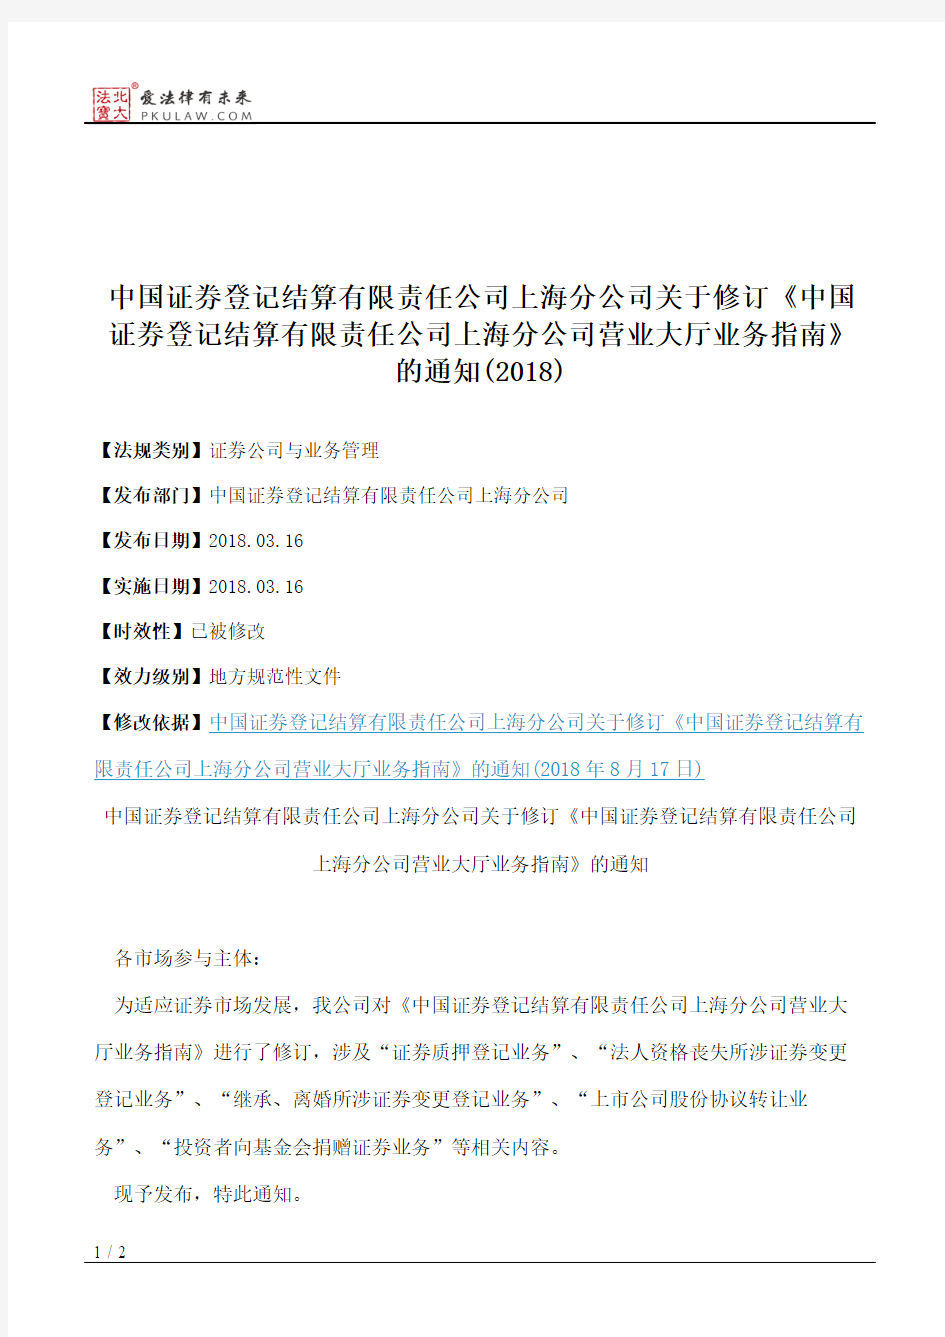 中国证券登记结算有限责任公司上海分公司关于修订《中国证券登记